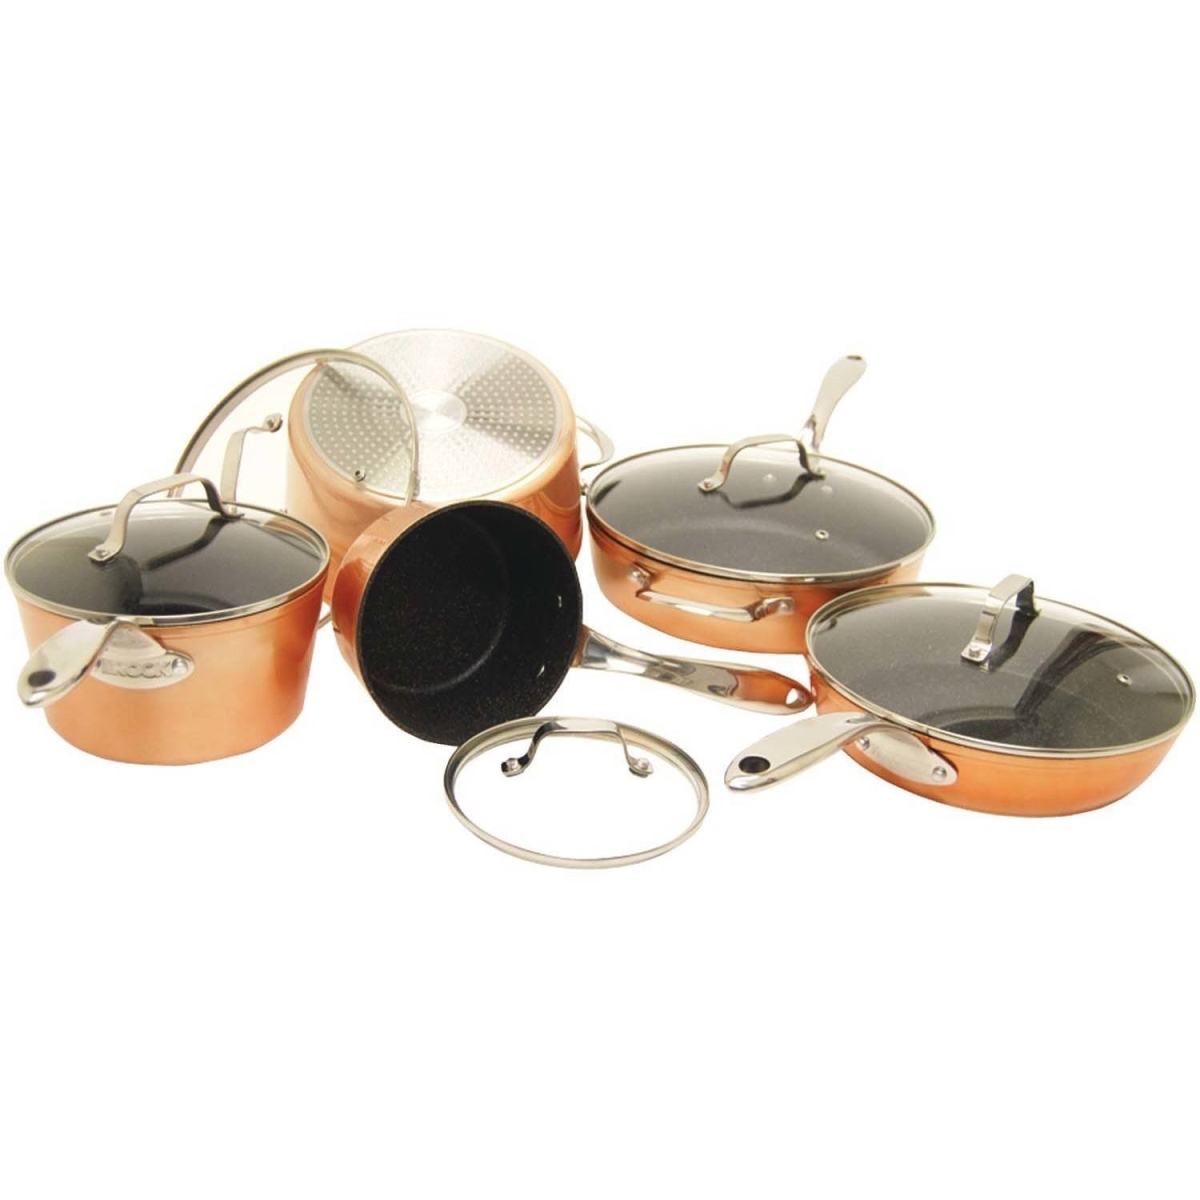 030910-001-star 10-piece Copper Cookware Set